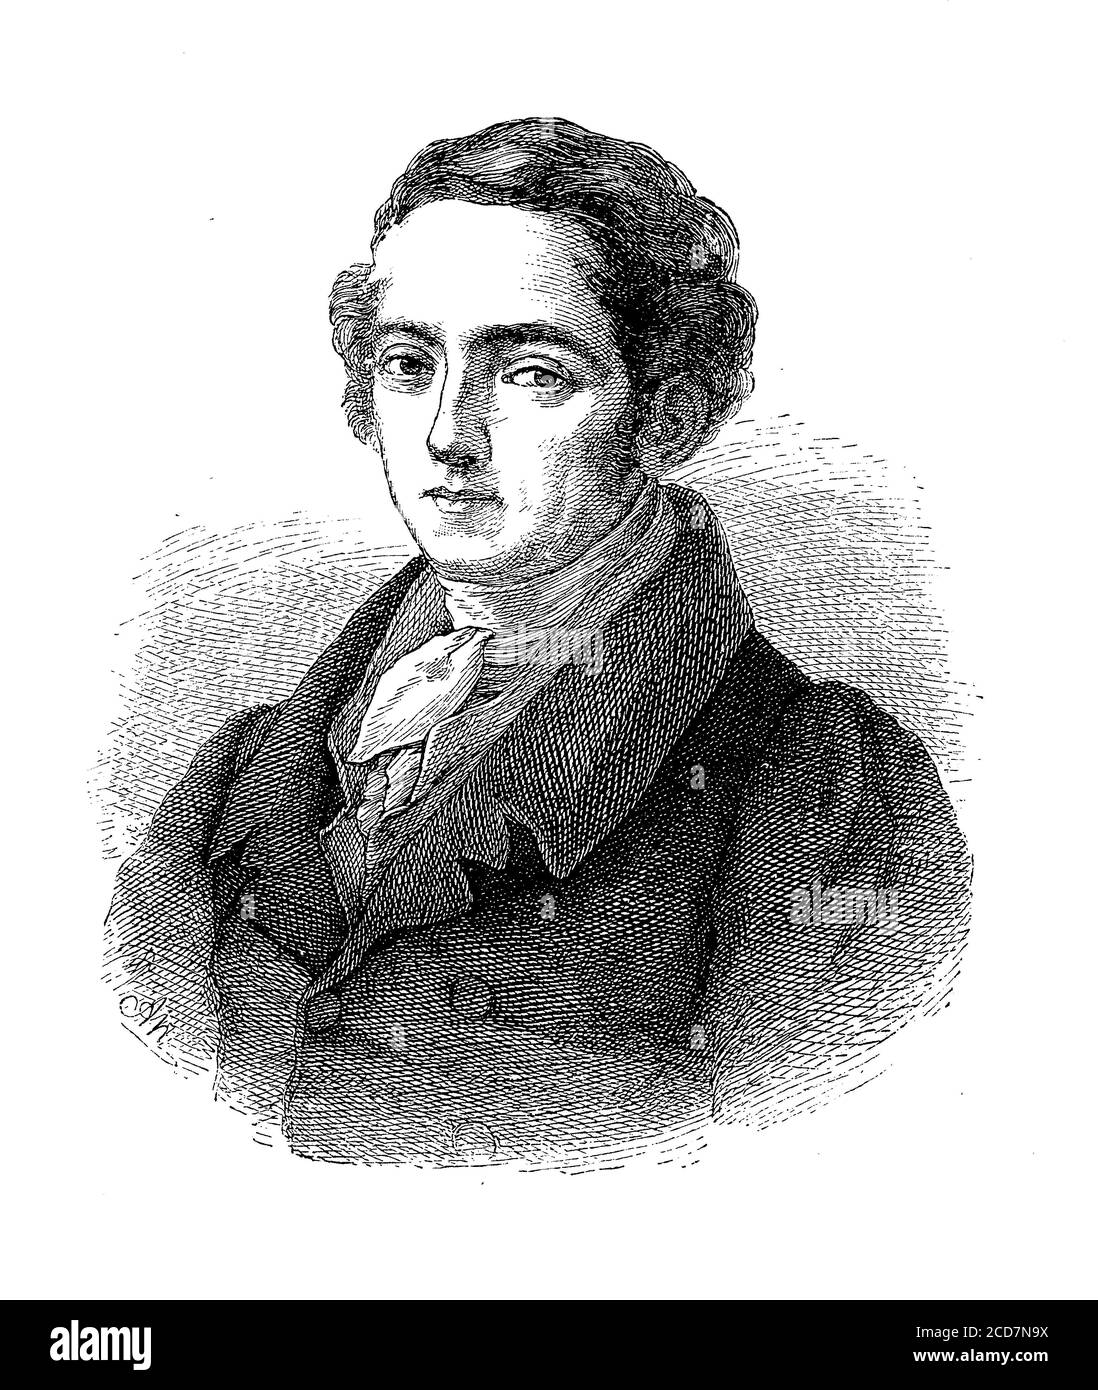 Joseph von Fraunhofer (1787 - 1826) Bayerischer Physiker, Erfinder, optischer Linsenhersteller für Teleskope und Spettroskope, Entdecker der Sonnenabsorptionslinien Stockfoto